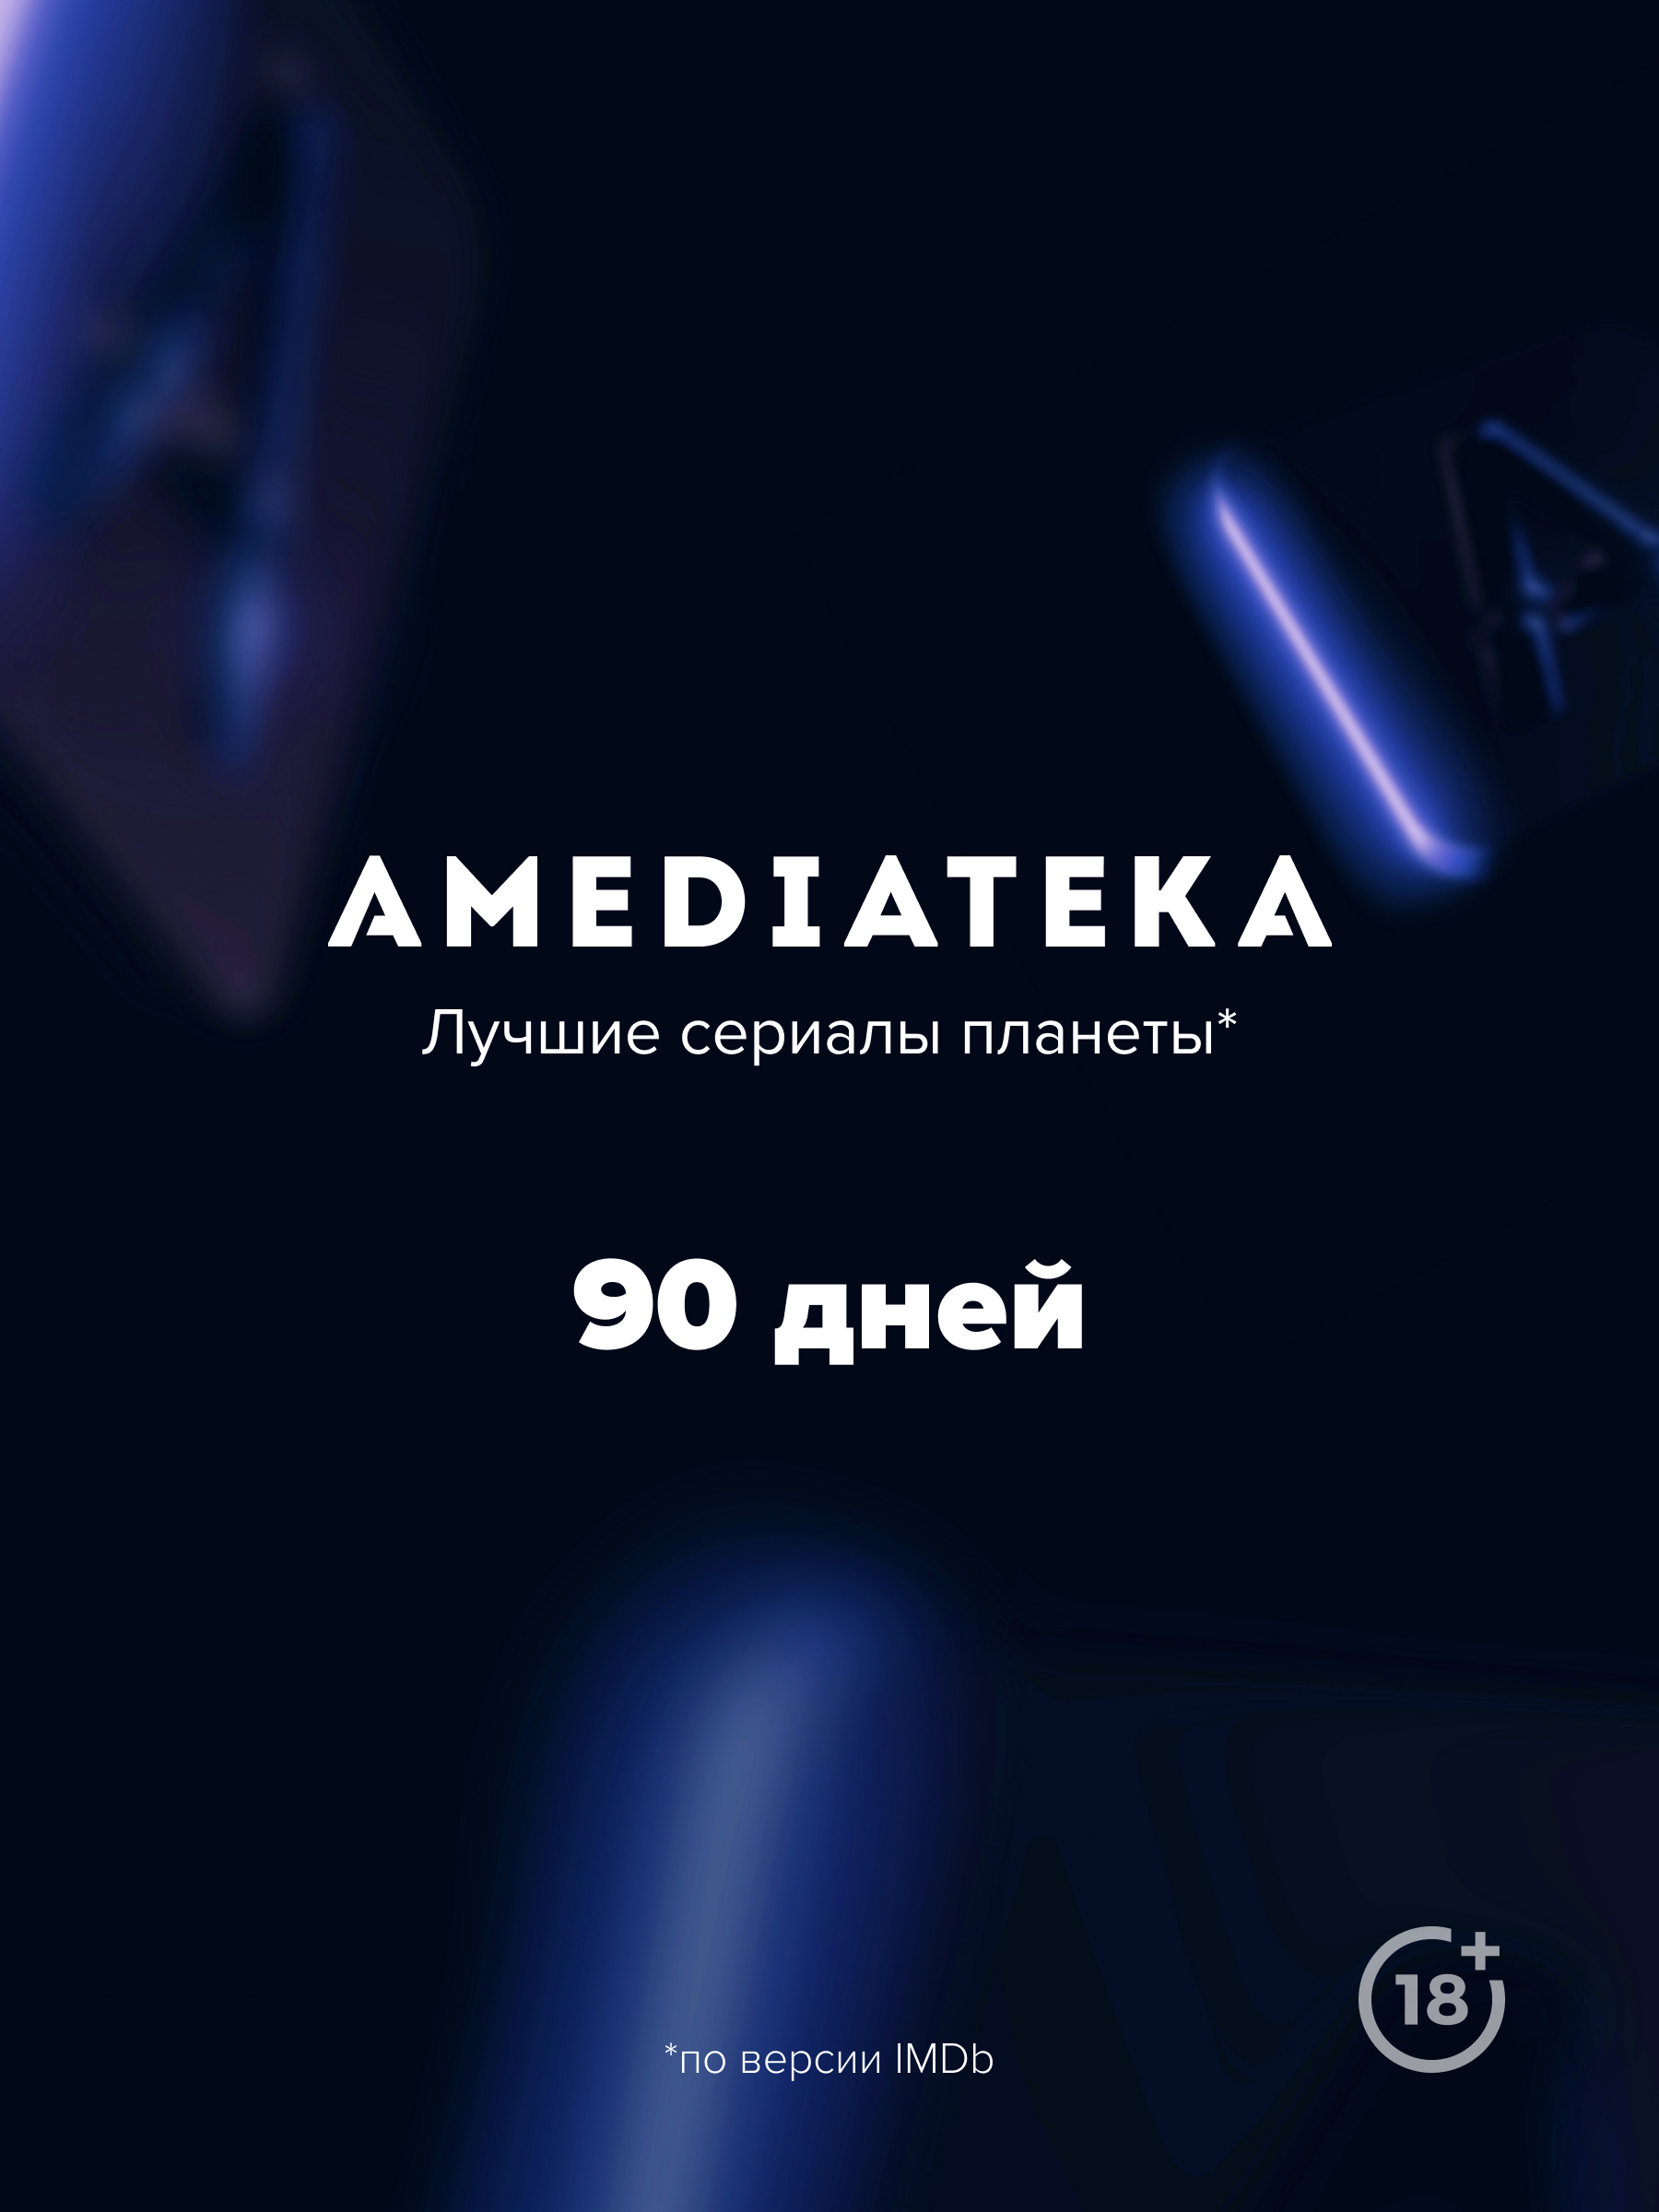 Онлайн-кинотеатр Amediateka (подписка на 90 дней) [Цифровая версия] (Цифровая версия) от 1С Интерес